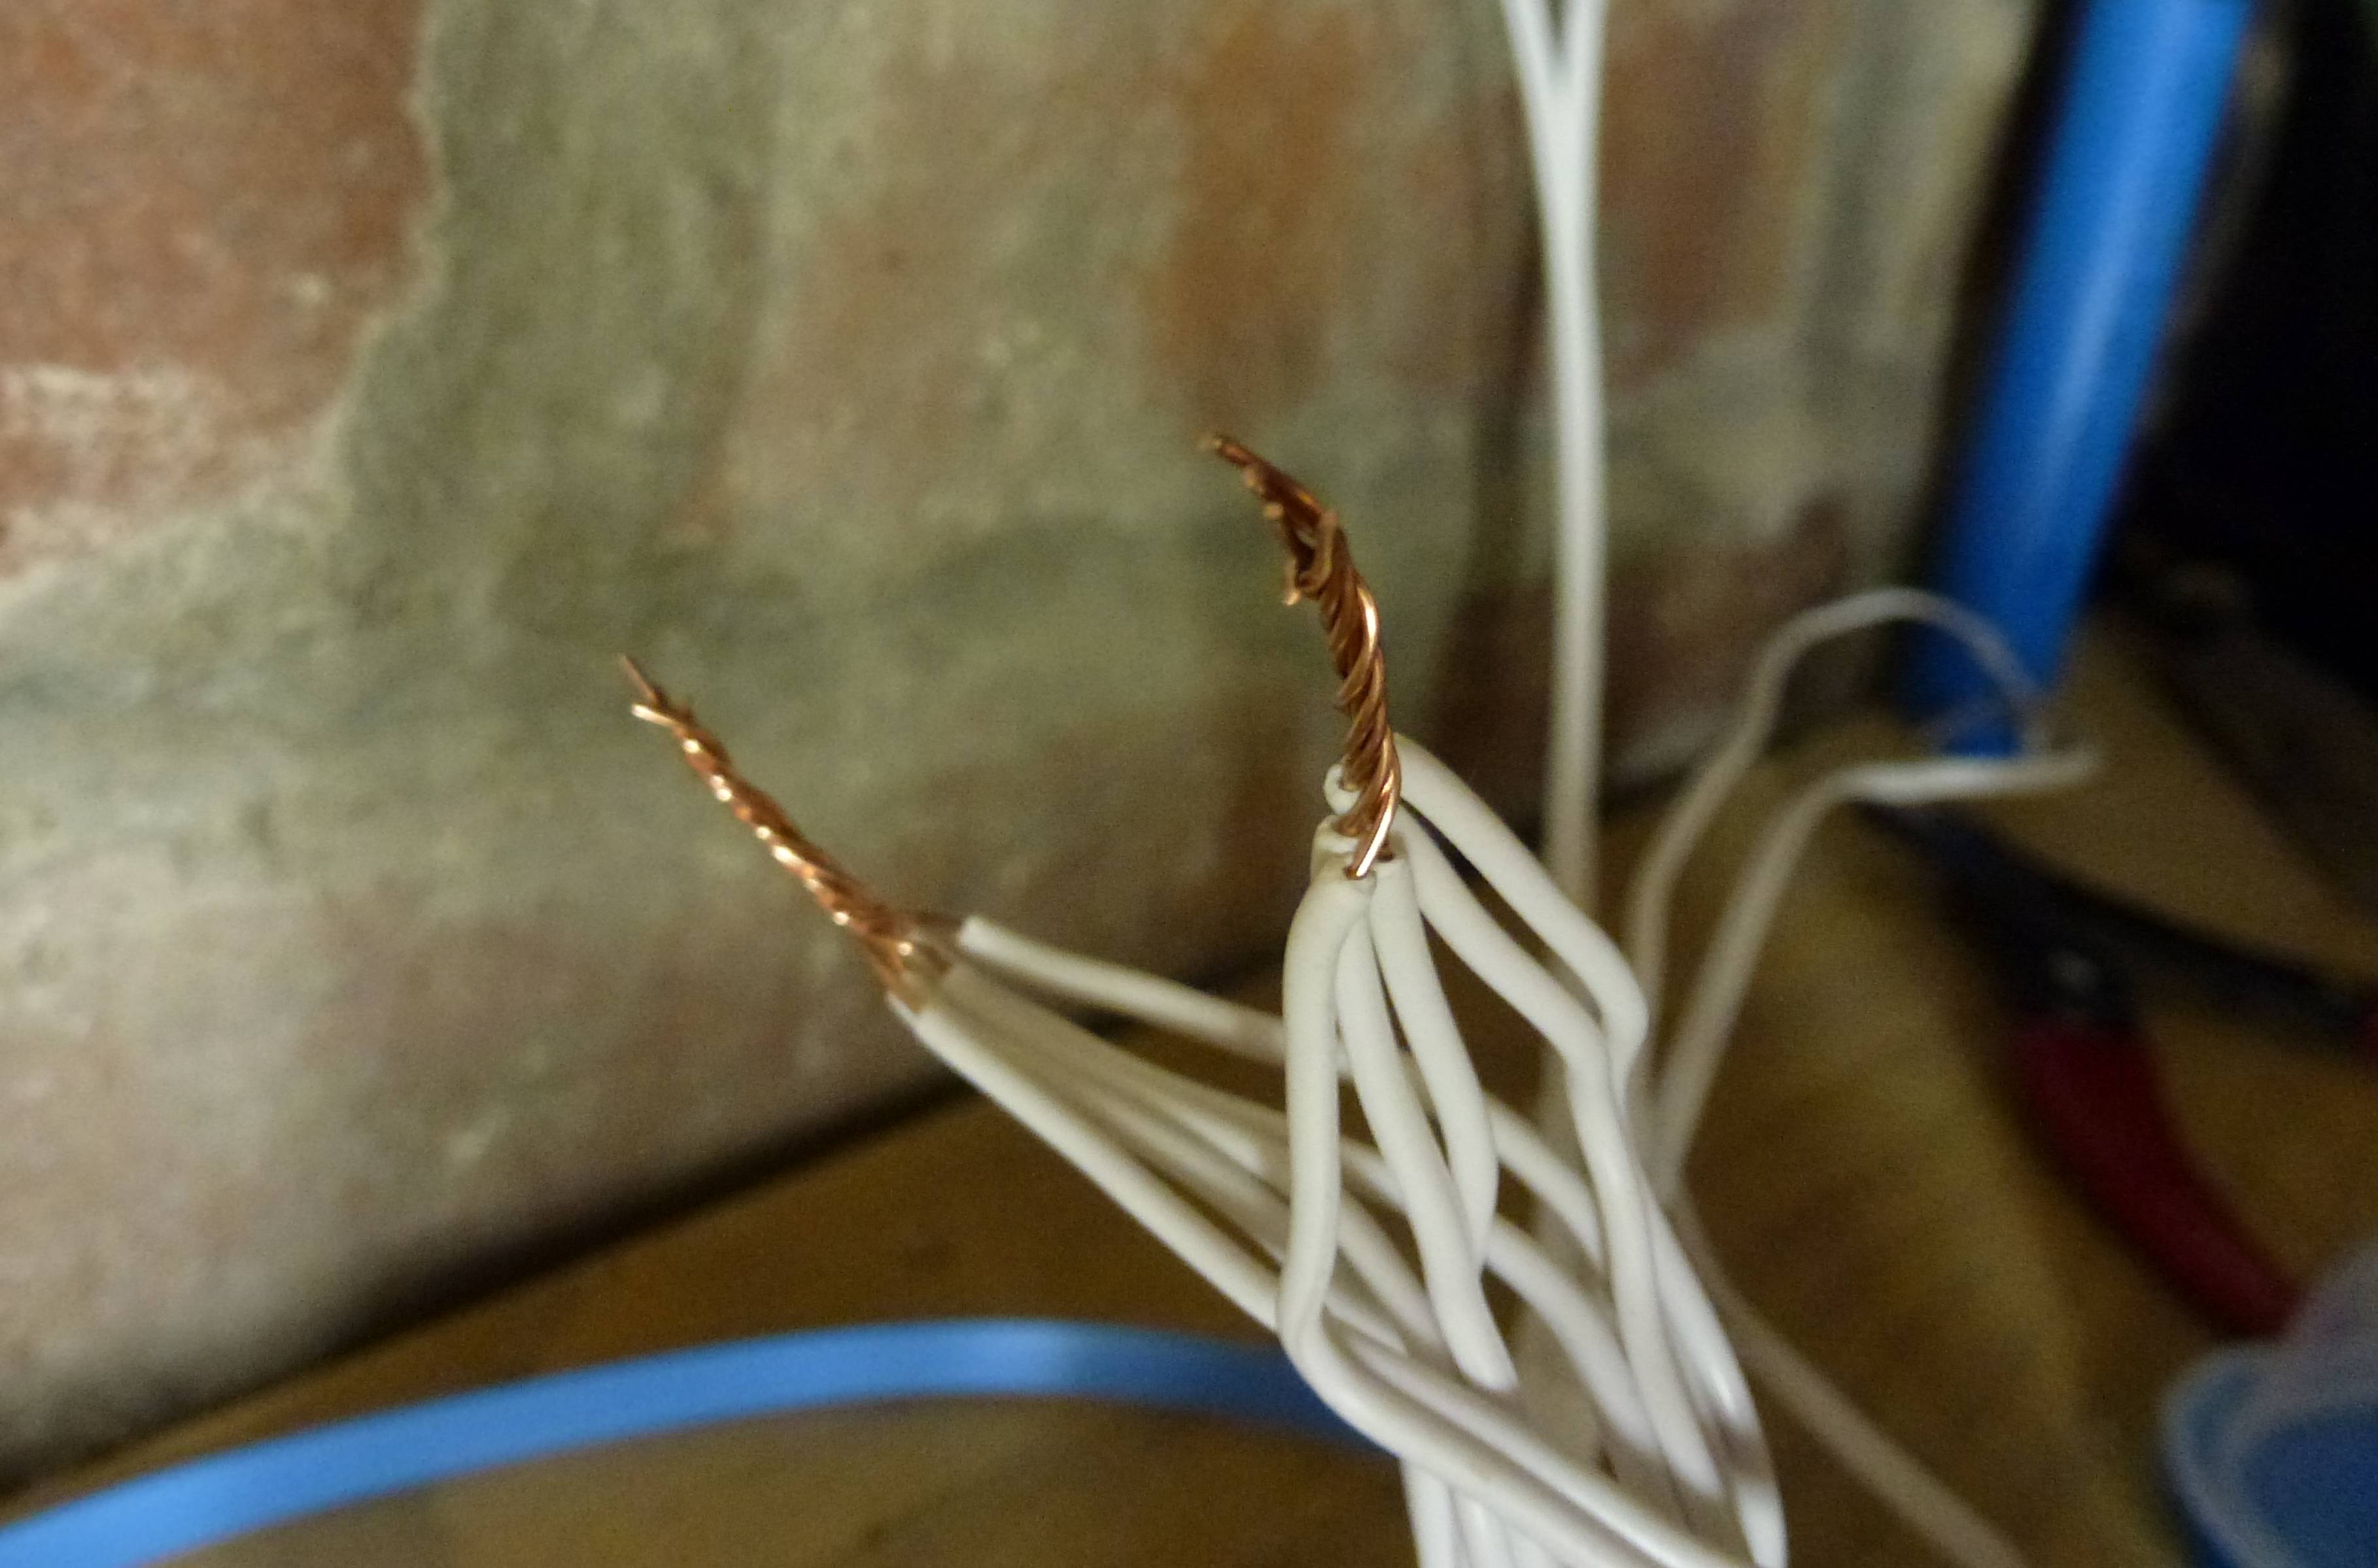 installation: wires 3